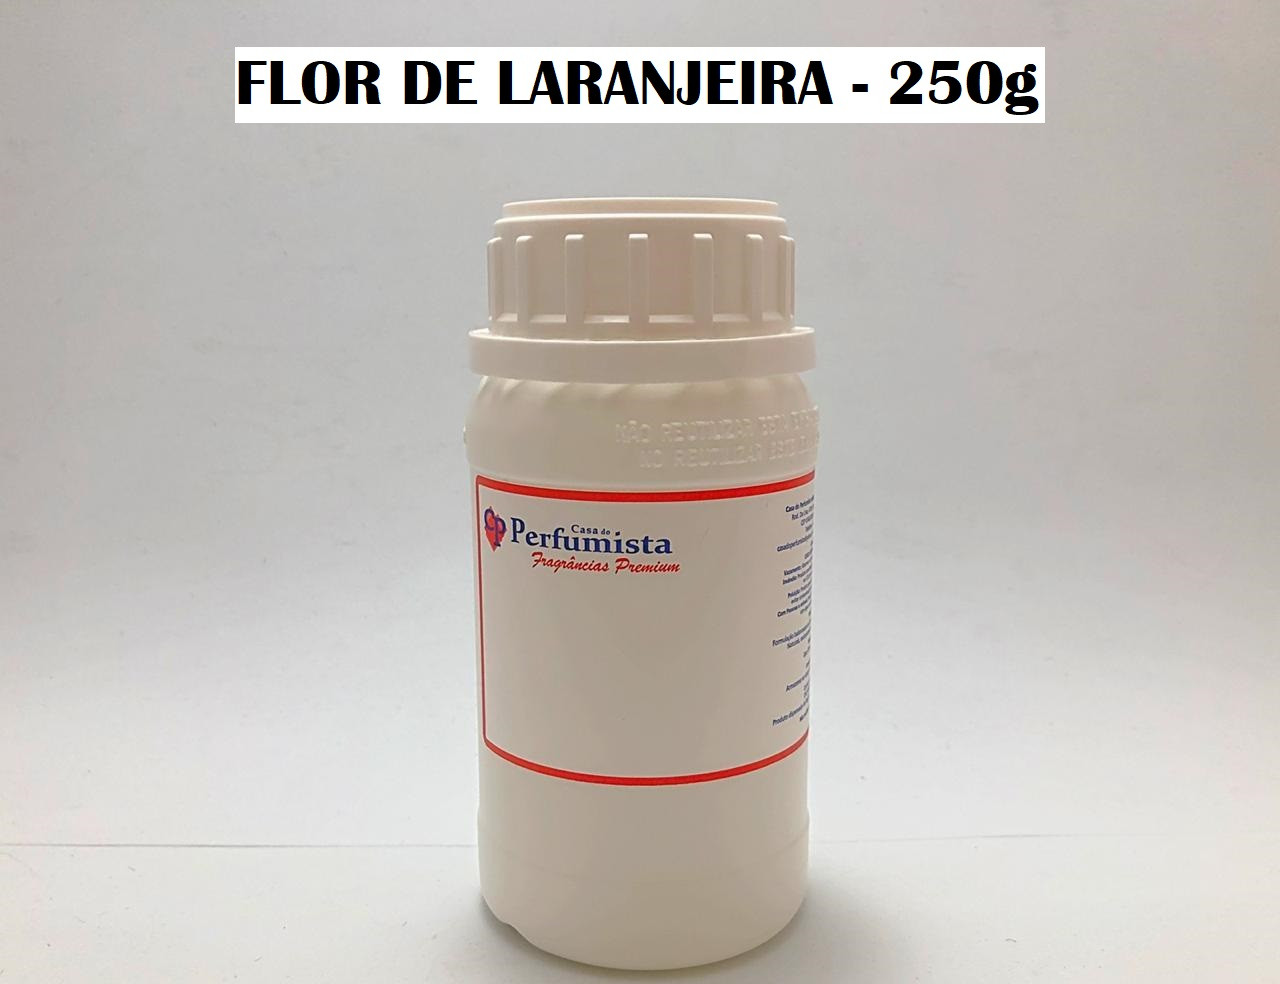 FLOR DE LARANJEIRA - 250g